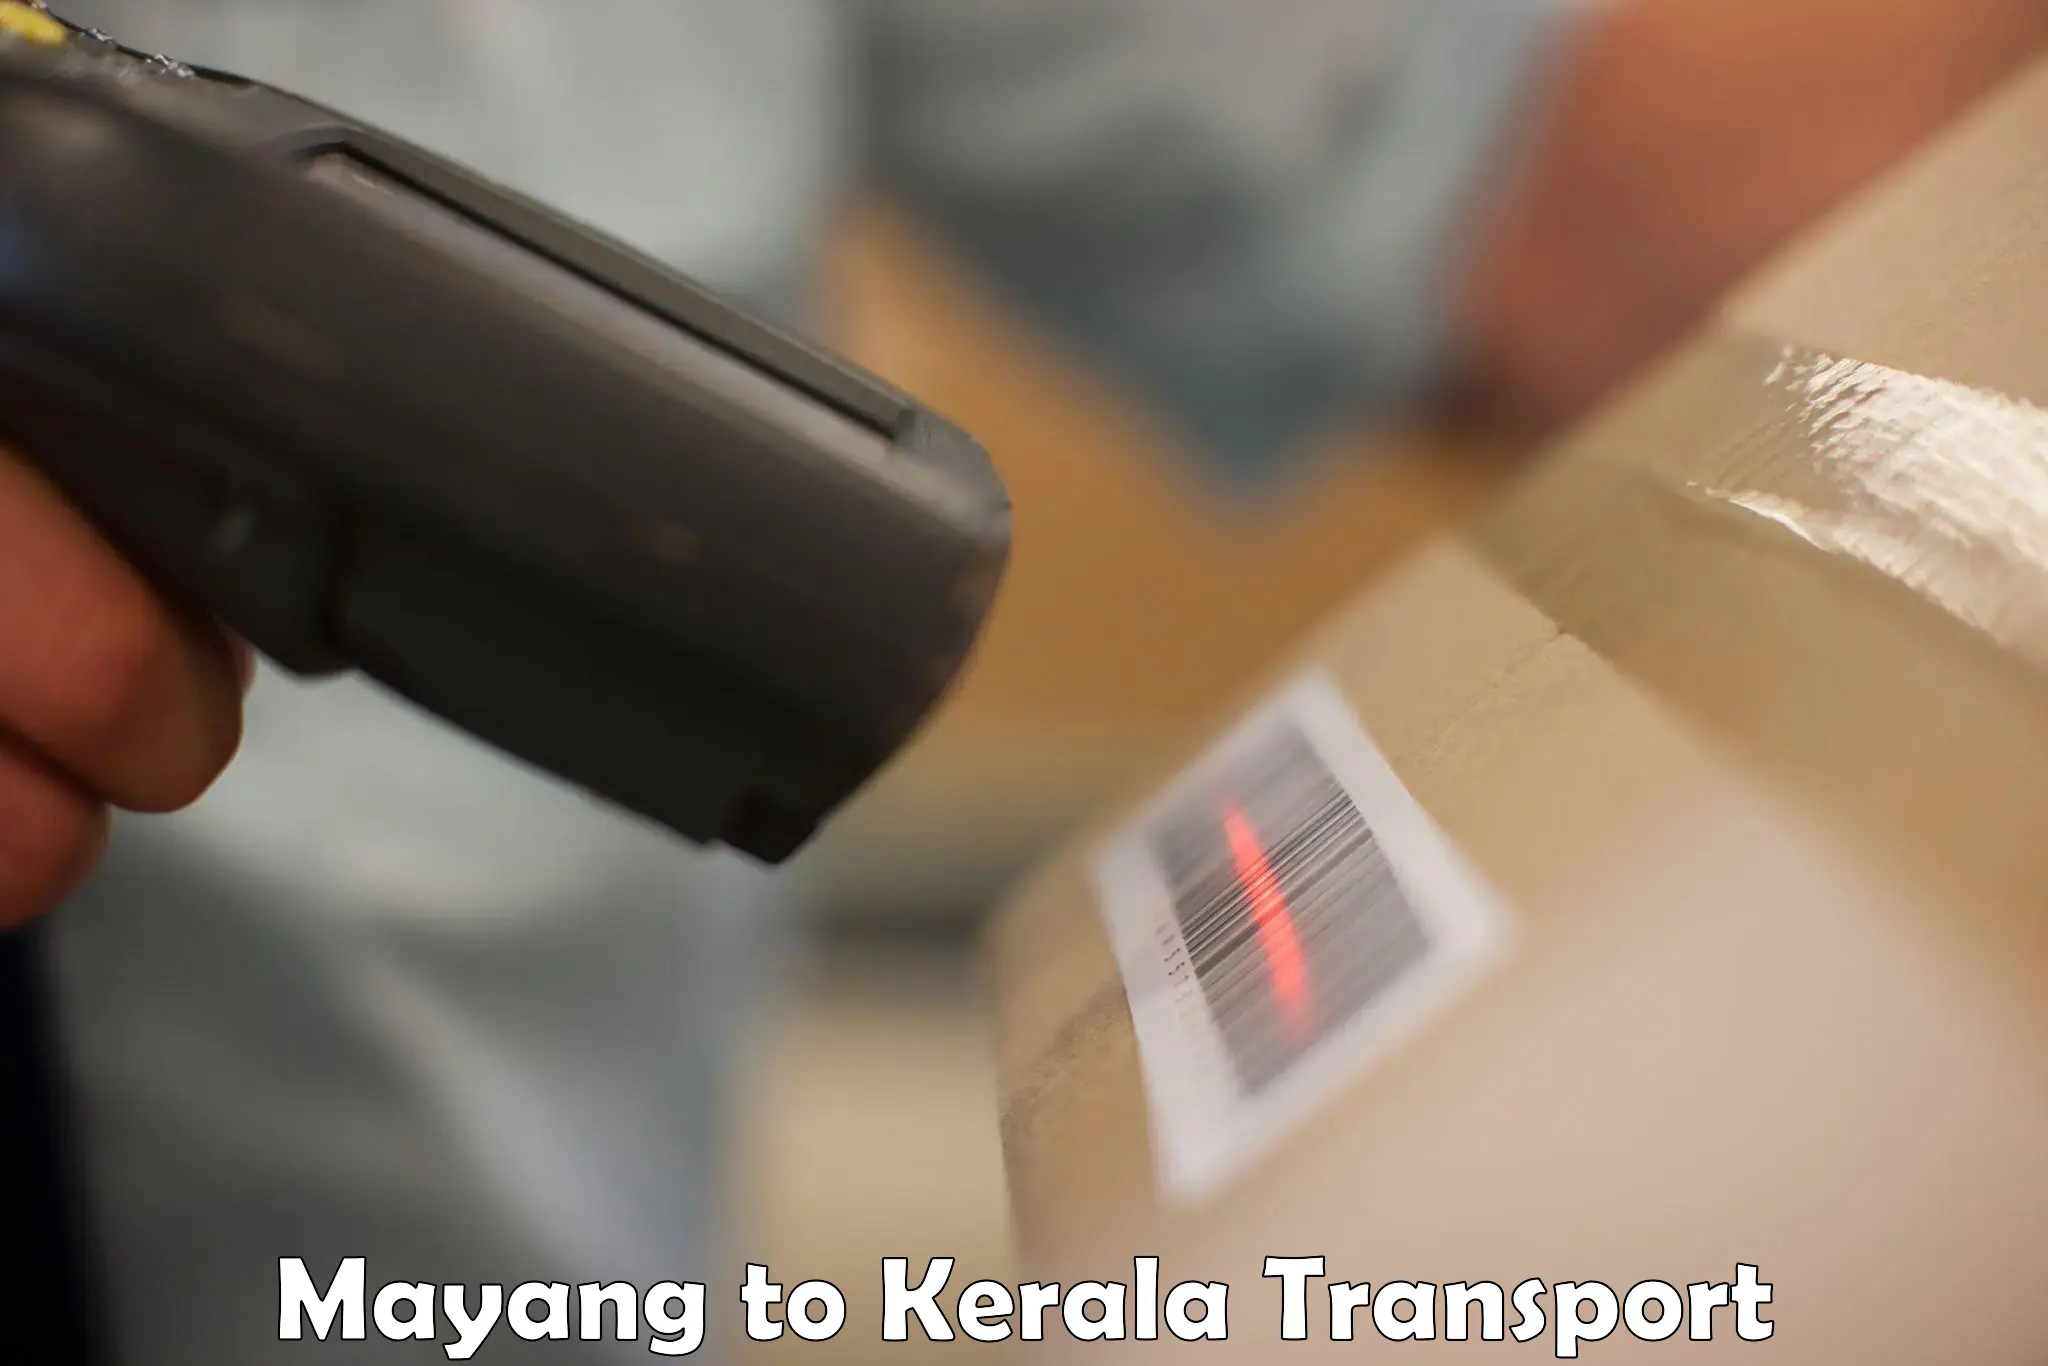 Pick up transport service Mayang to Kerala